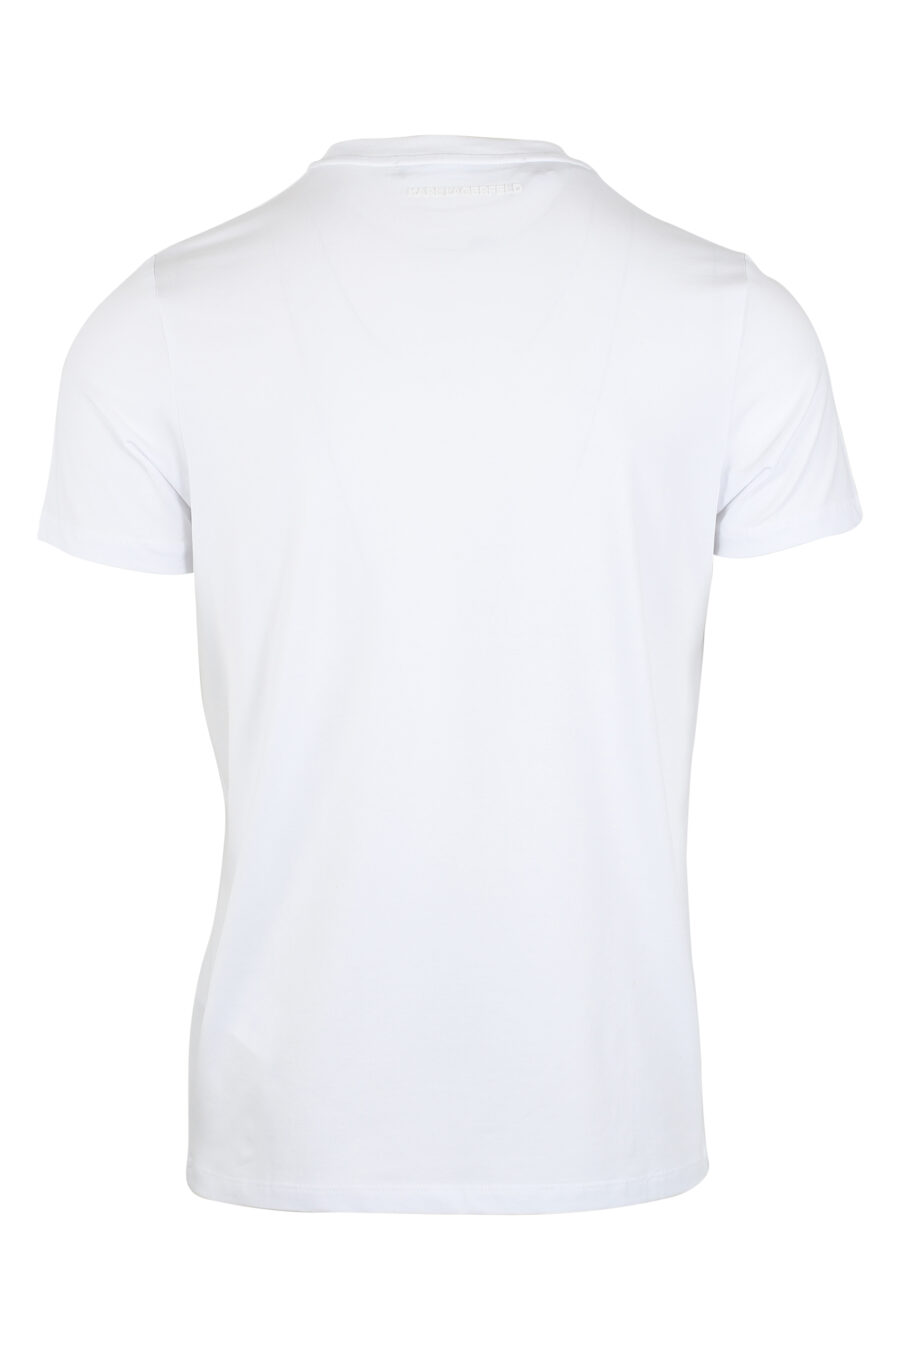 T-shirt branca com maxilogo "karl" preto em contraste - IMG 9492